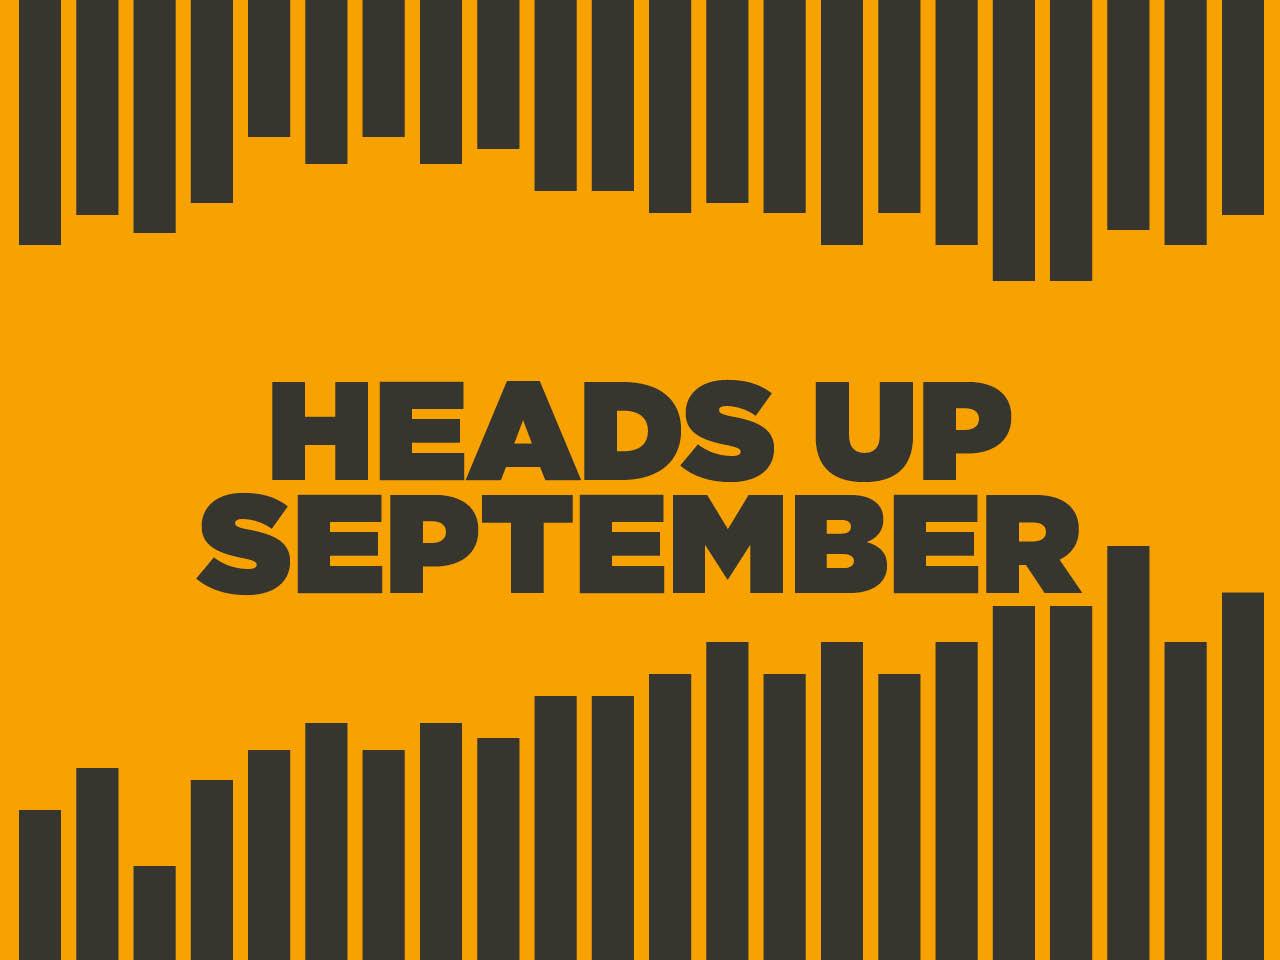 Heads up september